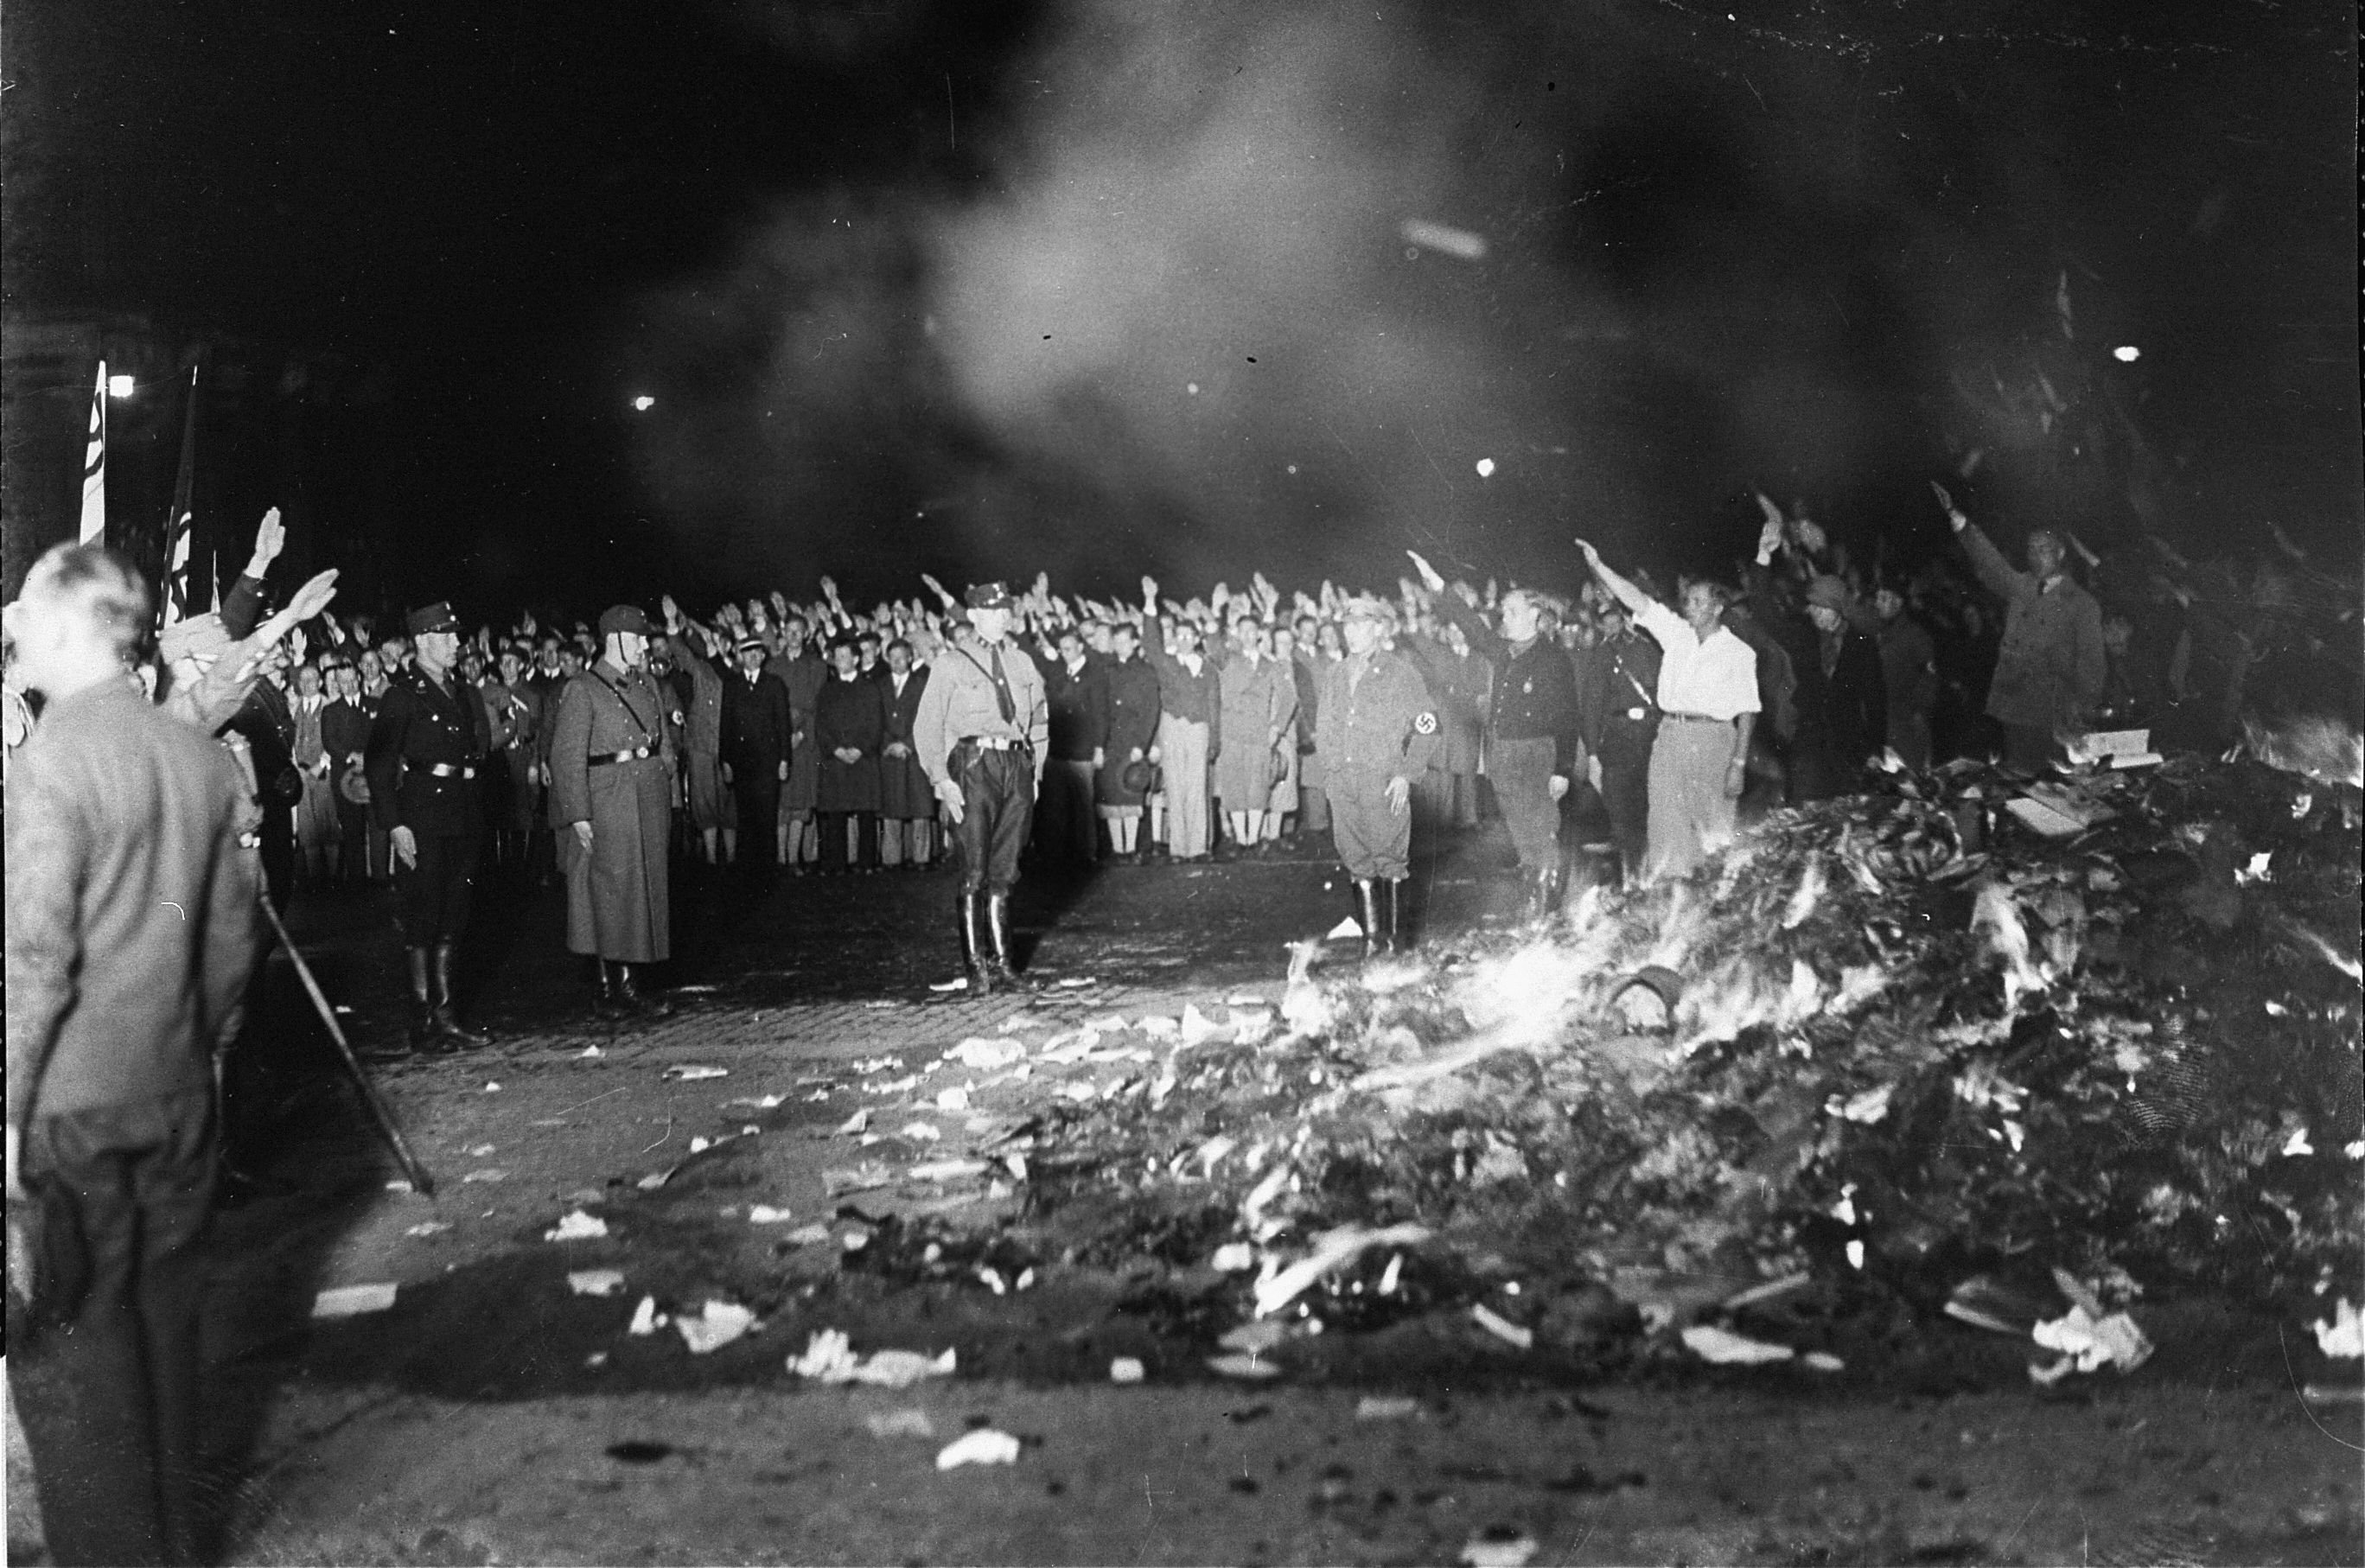 80 χρόνια μετά το κάψιμο των βιβλίων από τους ναζιστές το Βερολίνο «σκοντάφτει» ηθελημένα στην κακή του προϊστορία